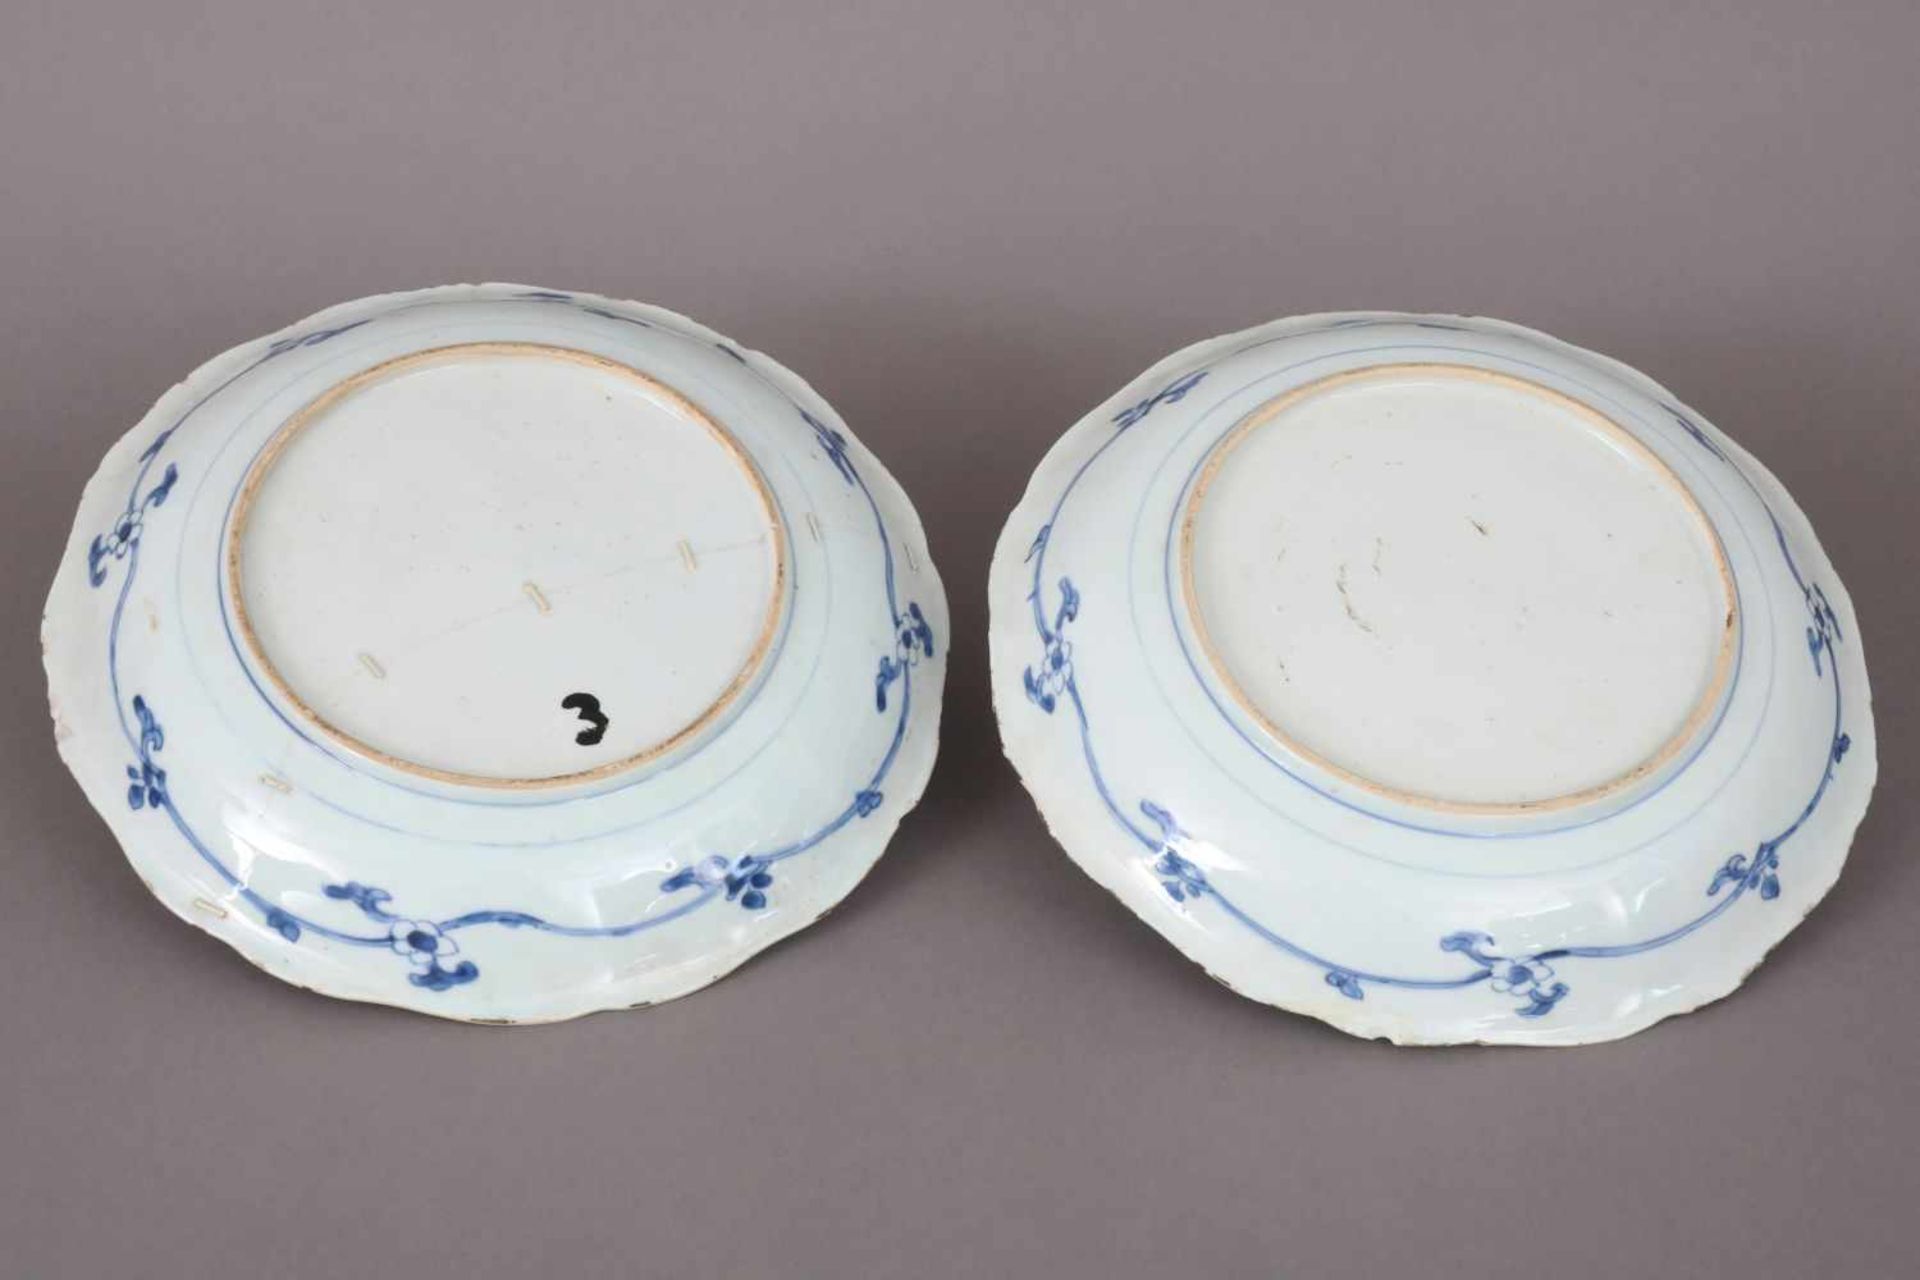 Paar chinesische TellerPorzellan, wohl 18. Jhdt., Blaumalerei, passige, leicht vertiefte Teller - Bild 3 aus 6